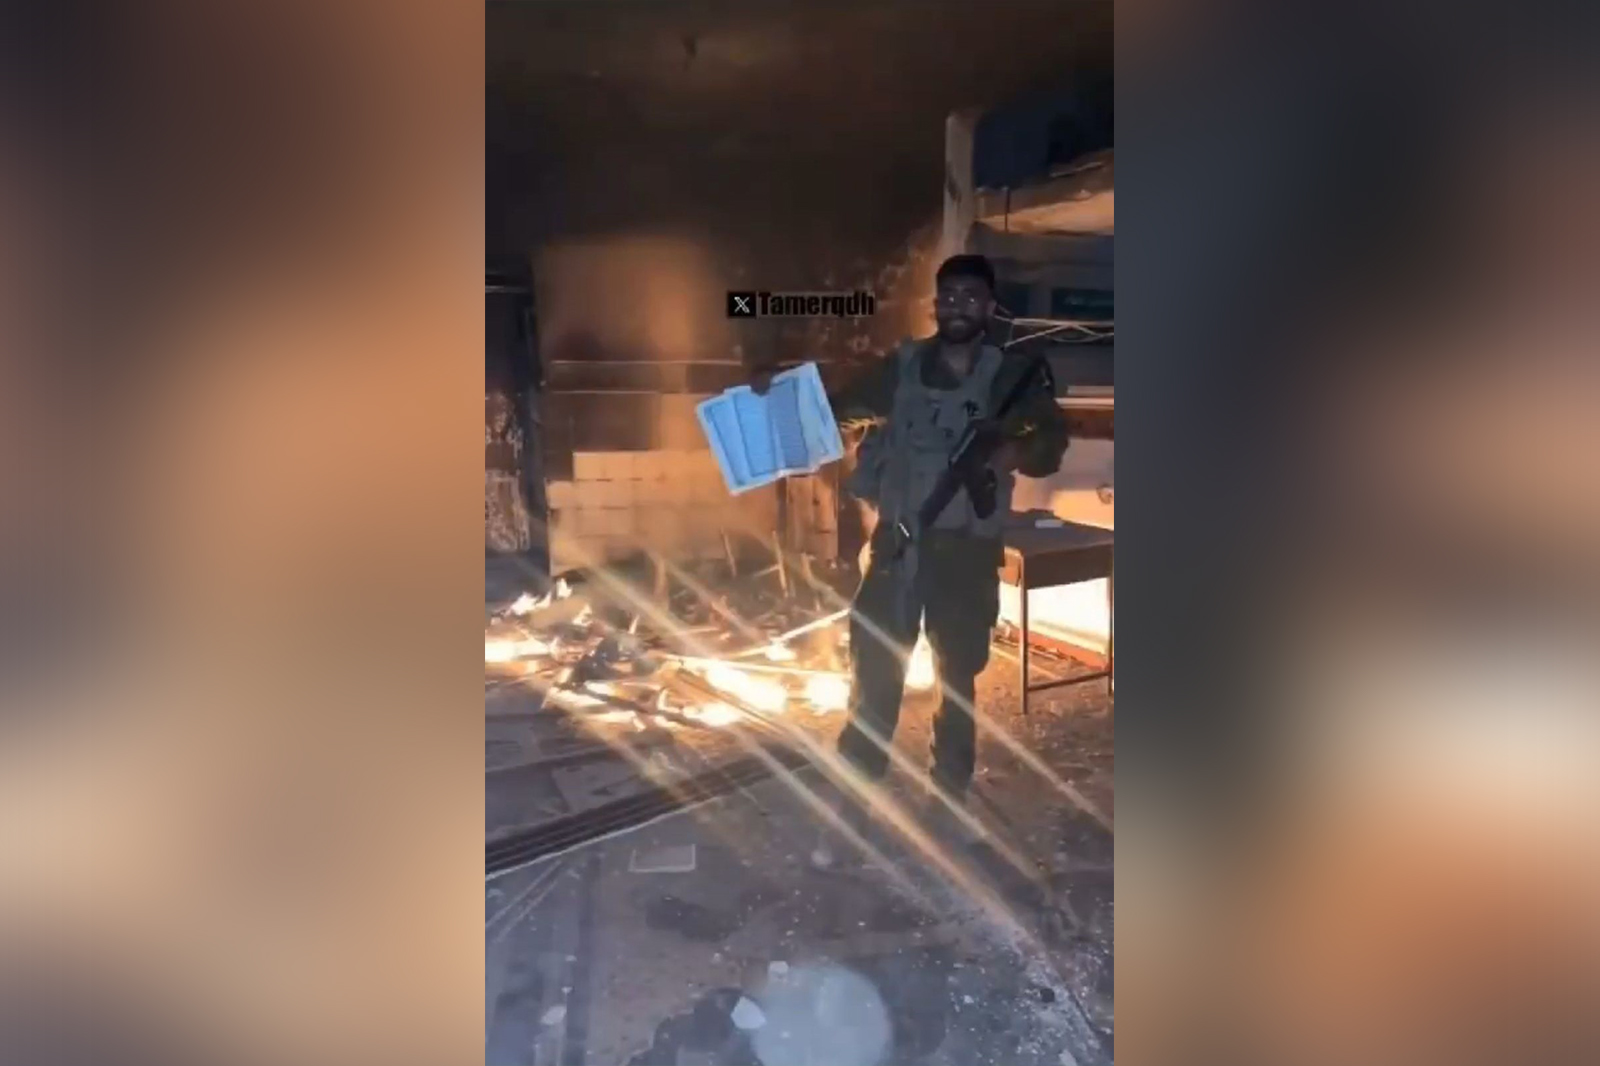 تعبيرًا عن الكراهية .. جندي إسرائيلي يلقي نسخة من القرآن في النار